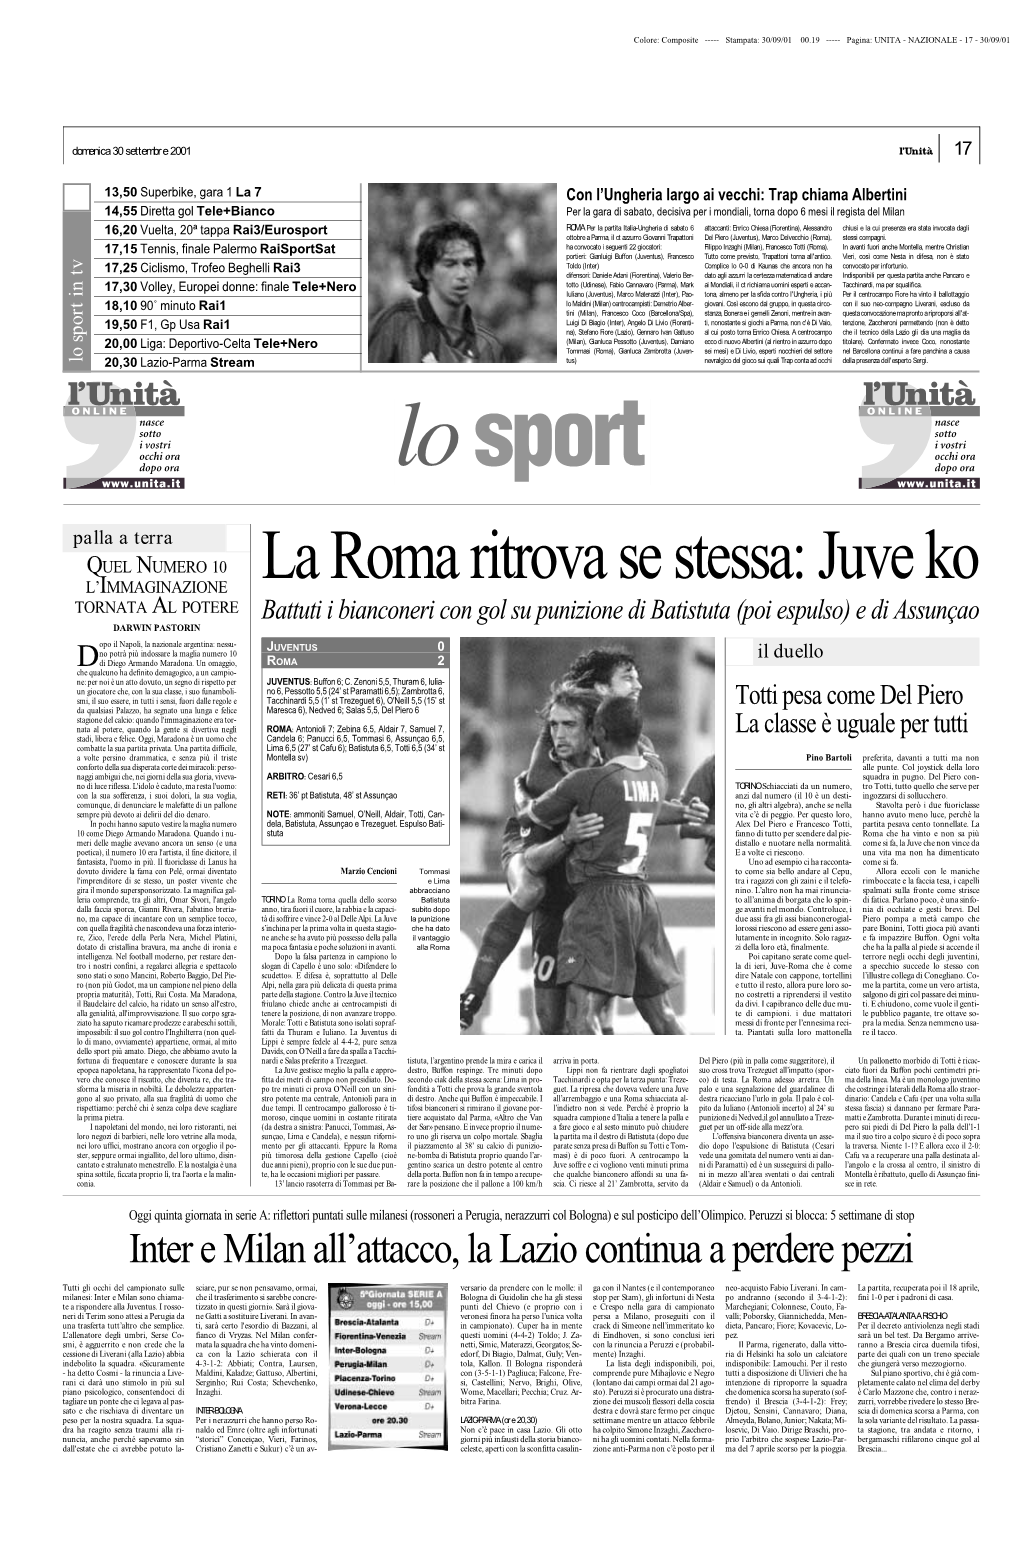 Inter E Milan All'attacco, La Lazio Continua a Perdere Pezzi